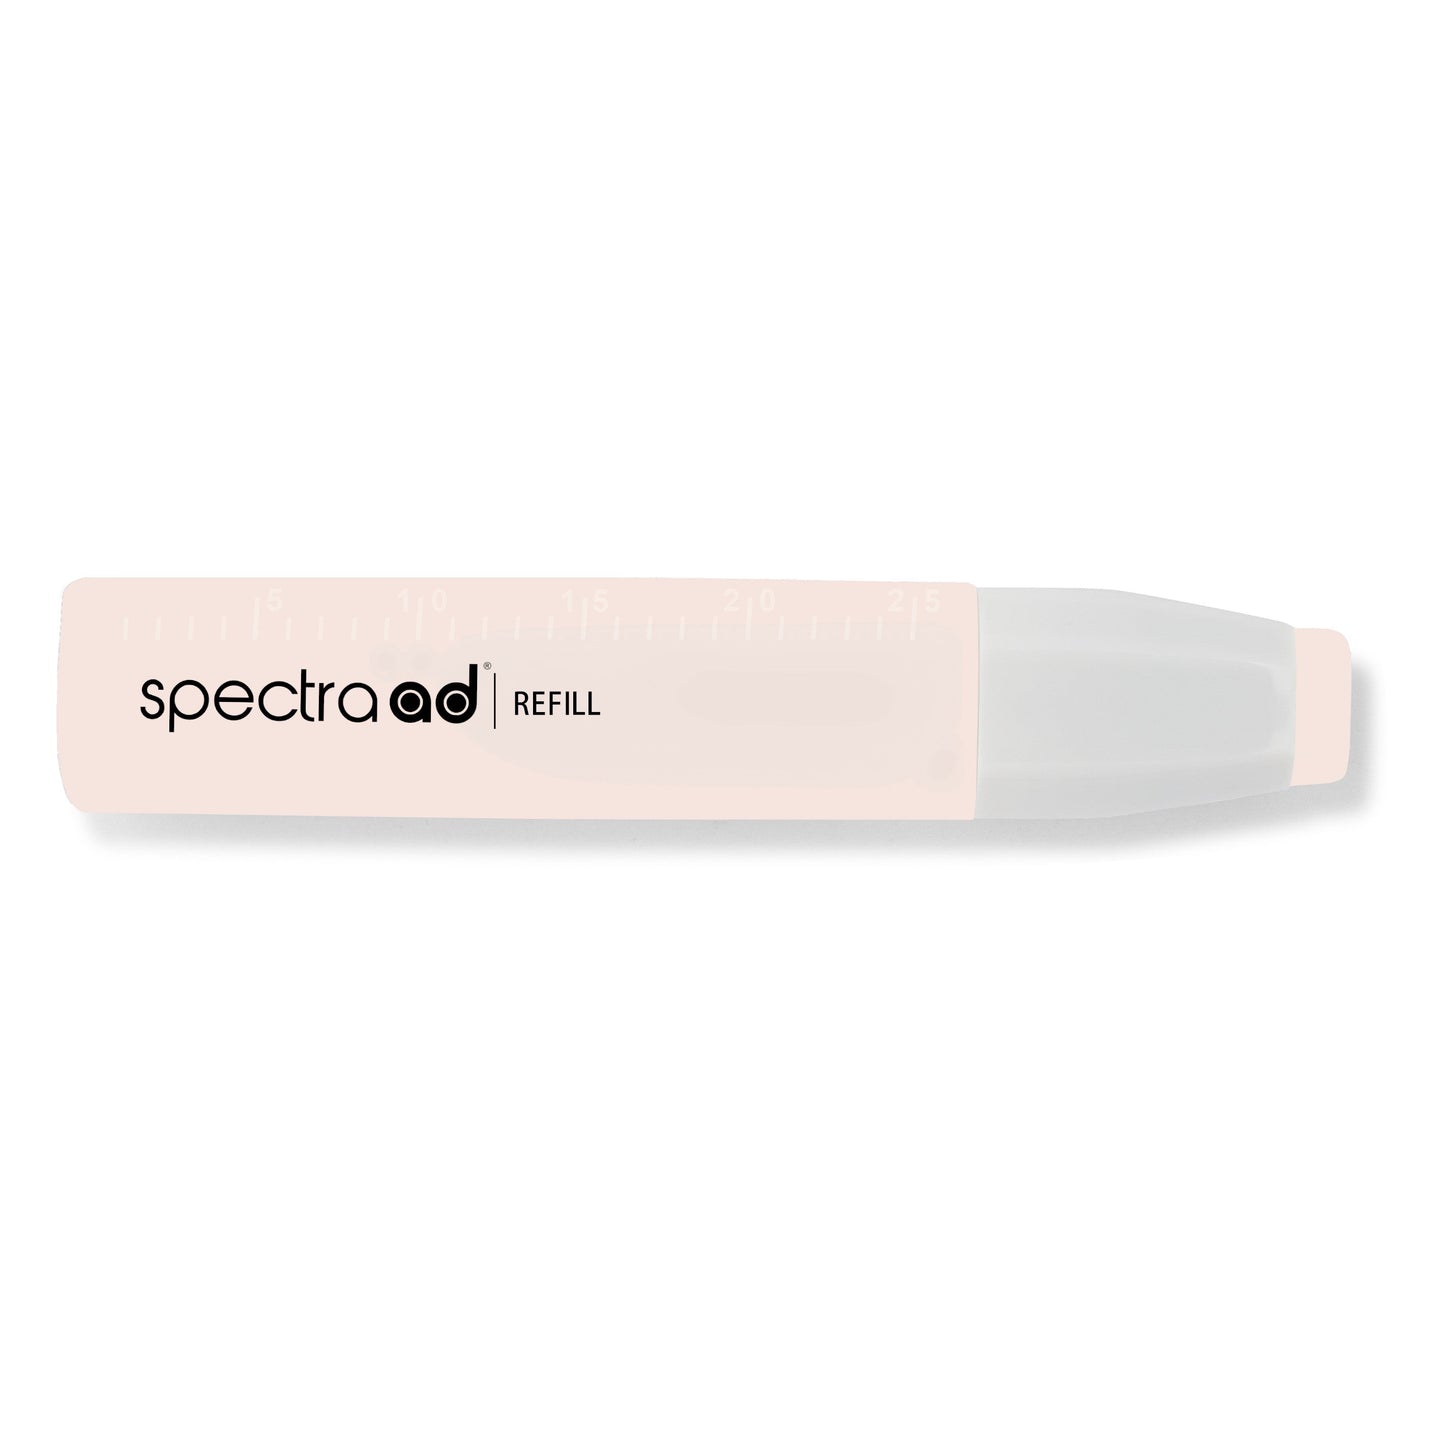 051 - Latte - Spectra AD Refill Bottle